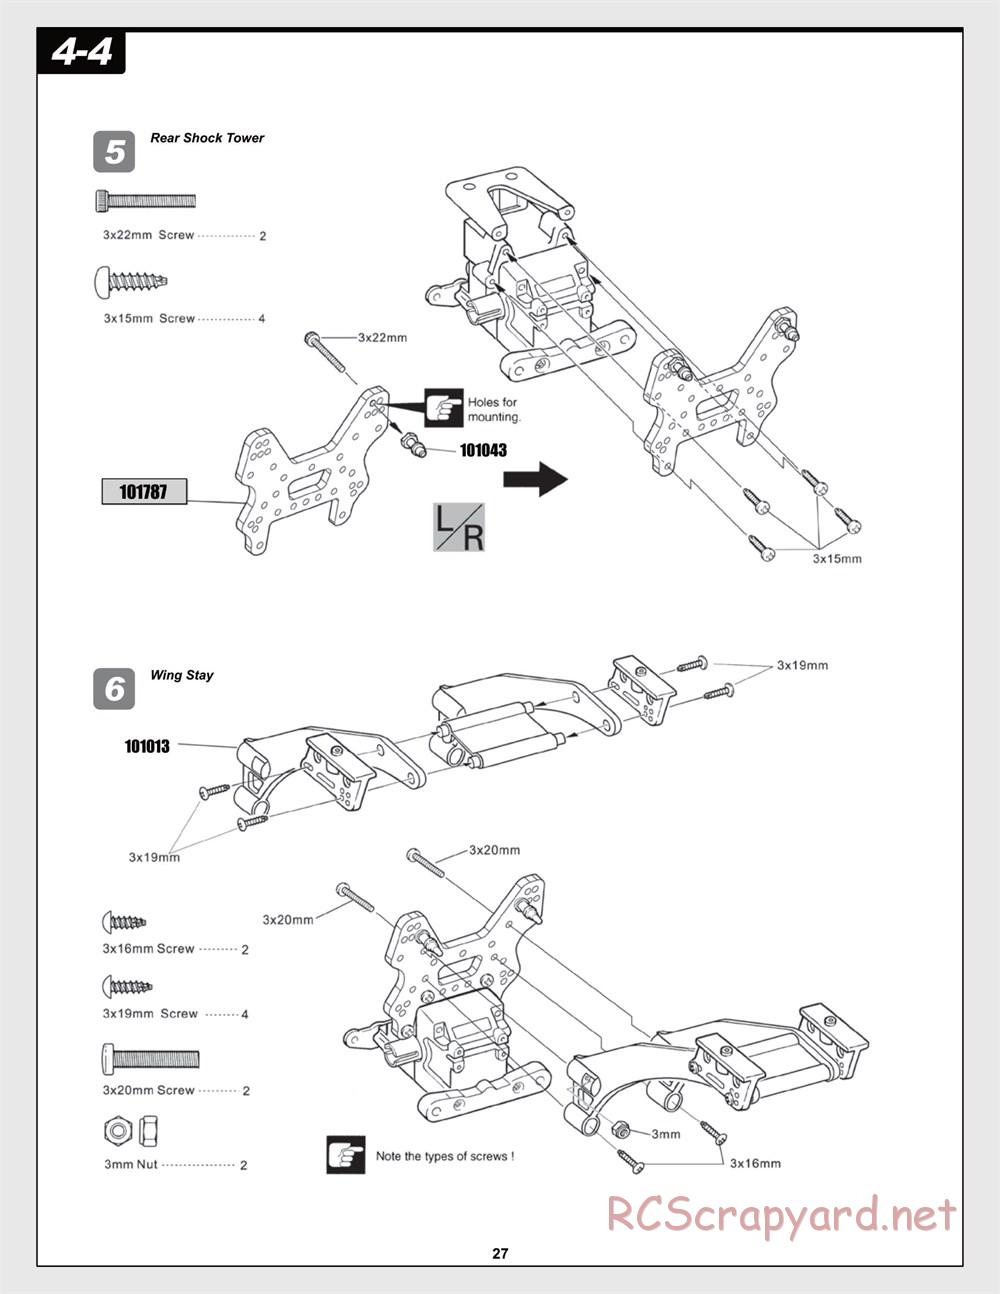 HPI - Trophy Flux Buggy - Manual - Page 27